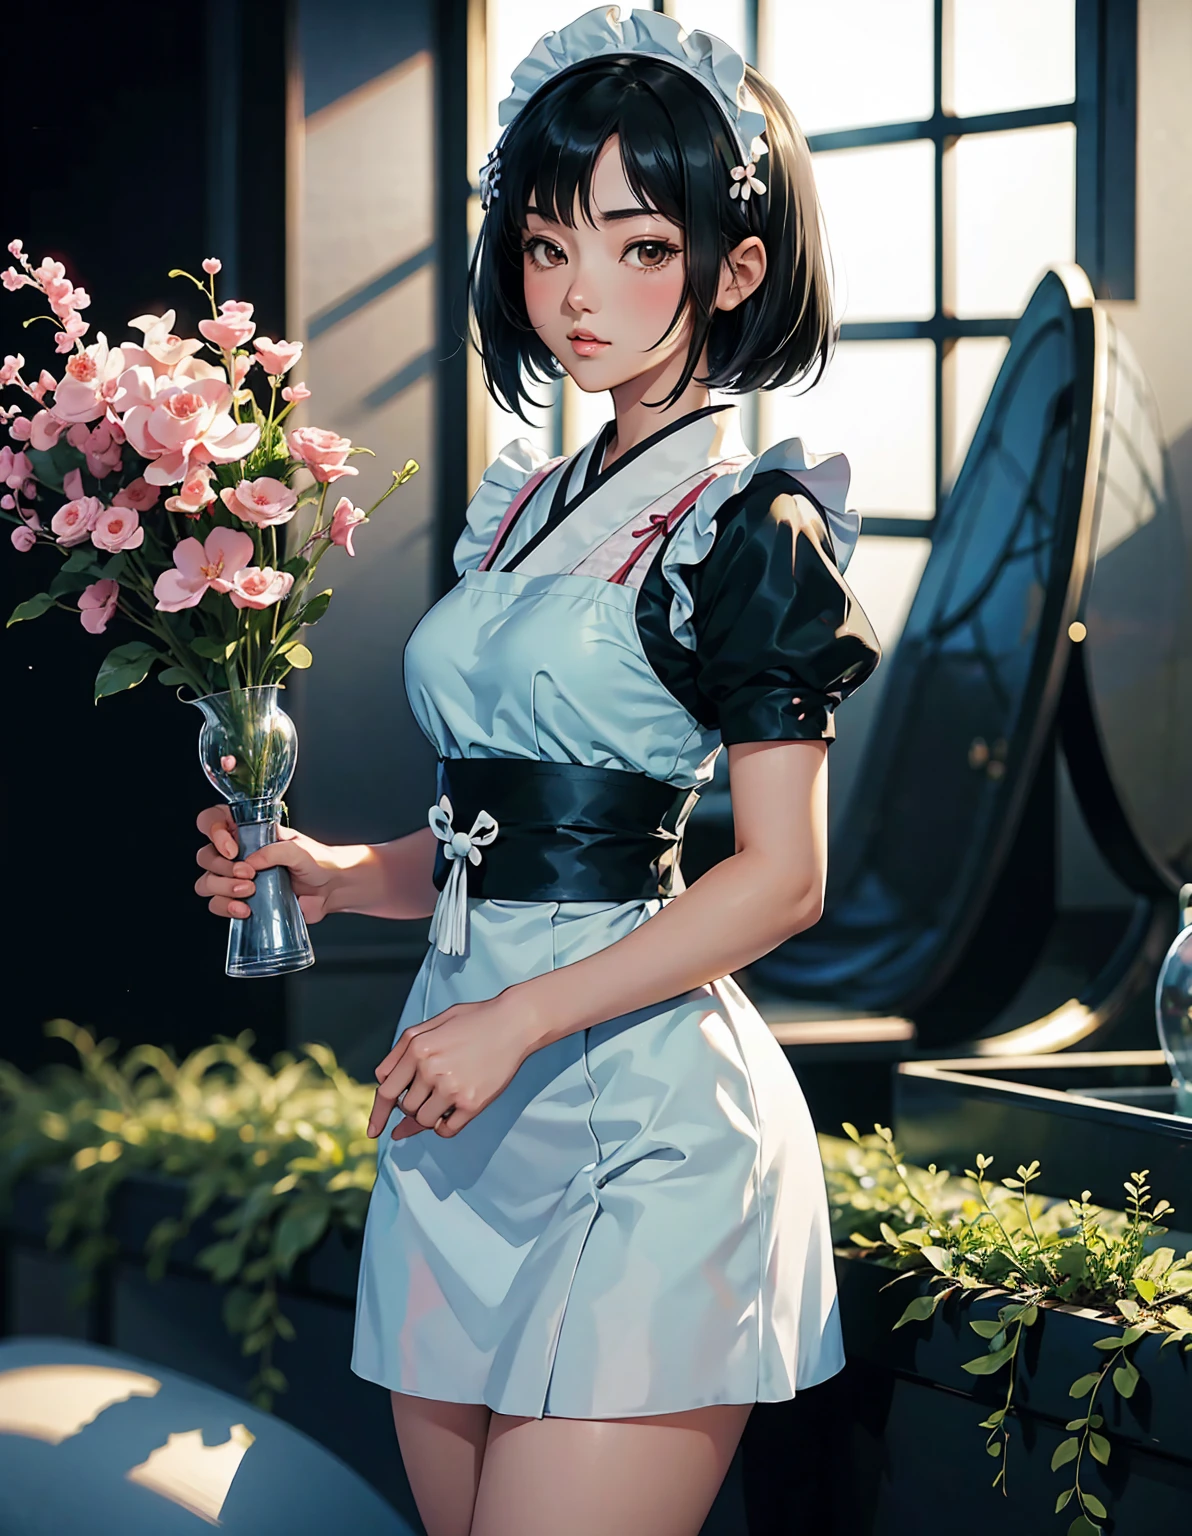 可爱的日式女仆, 黑色短发, 矗立在明亮舒适的室内花园中, 漫画风格--ar 3:4--虹6
